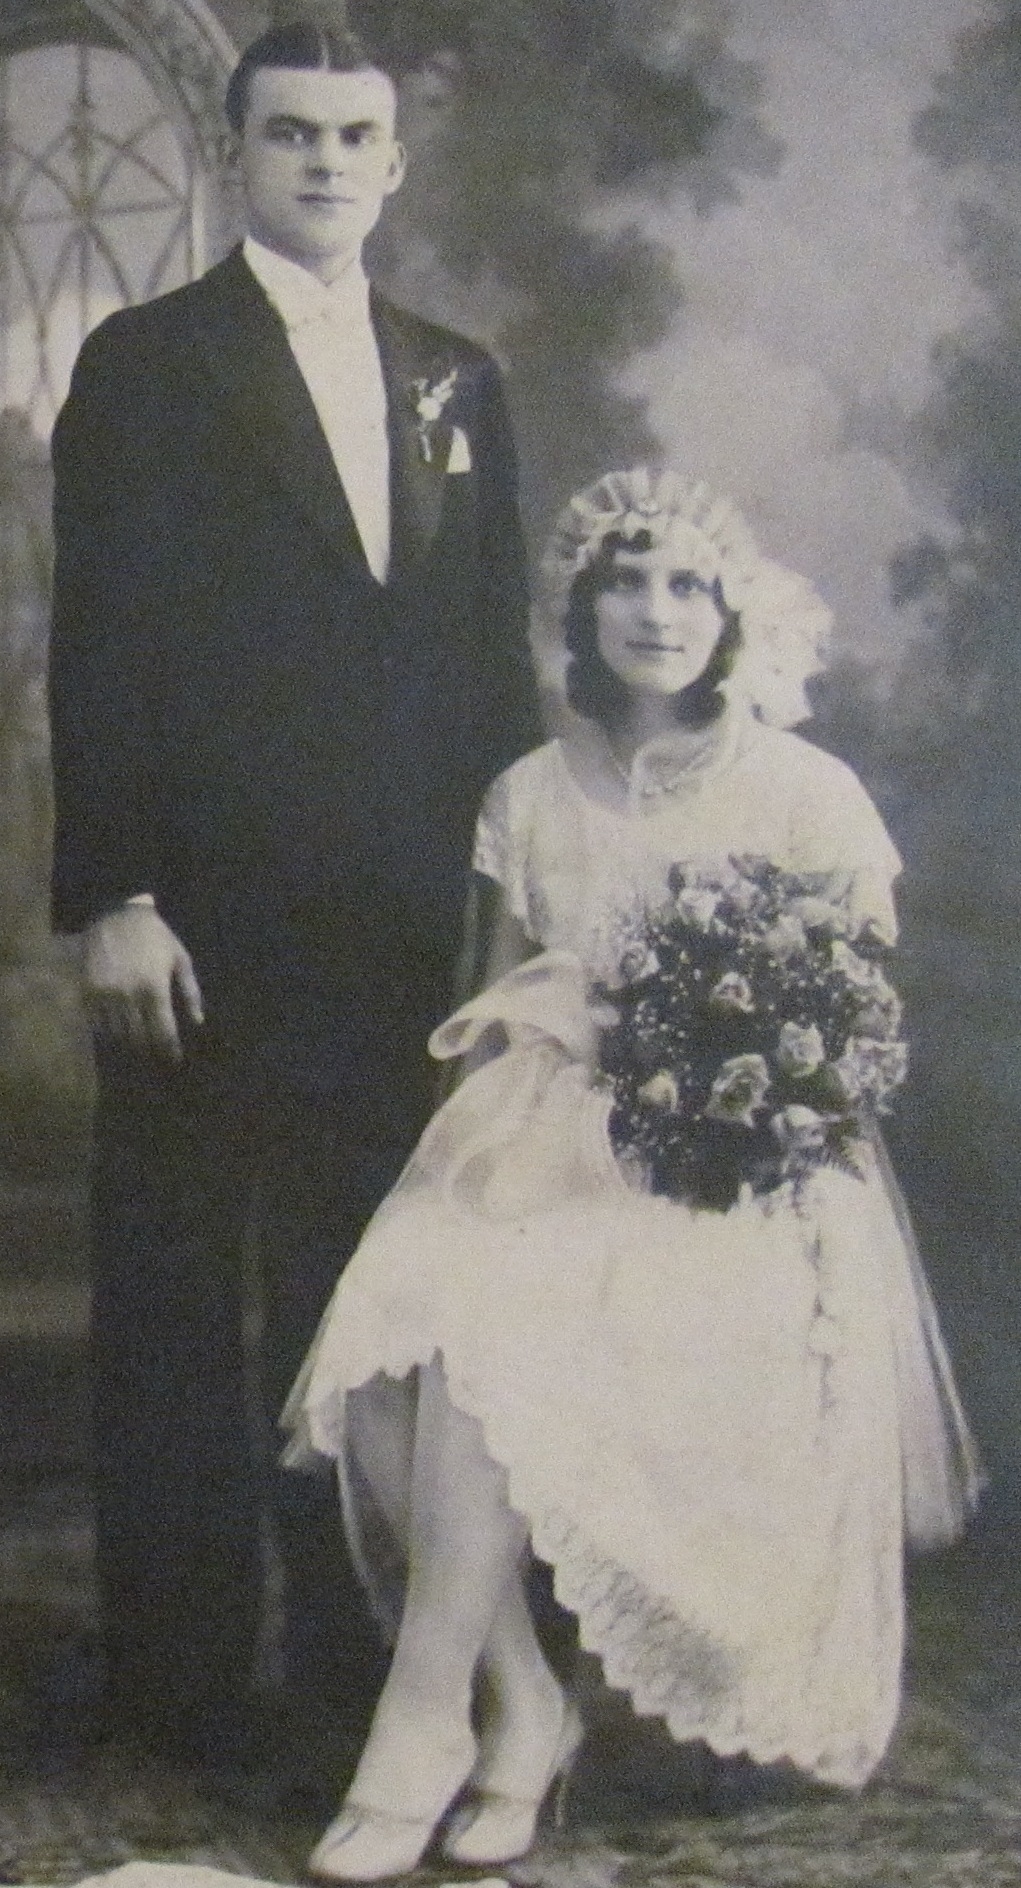 JOSEPH J. TRACZYNSKI & ELANORE J. RENKIEWICZ WED 1924